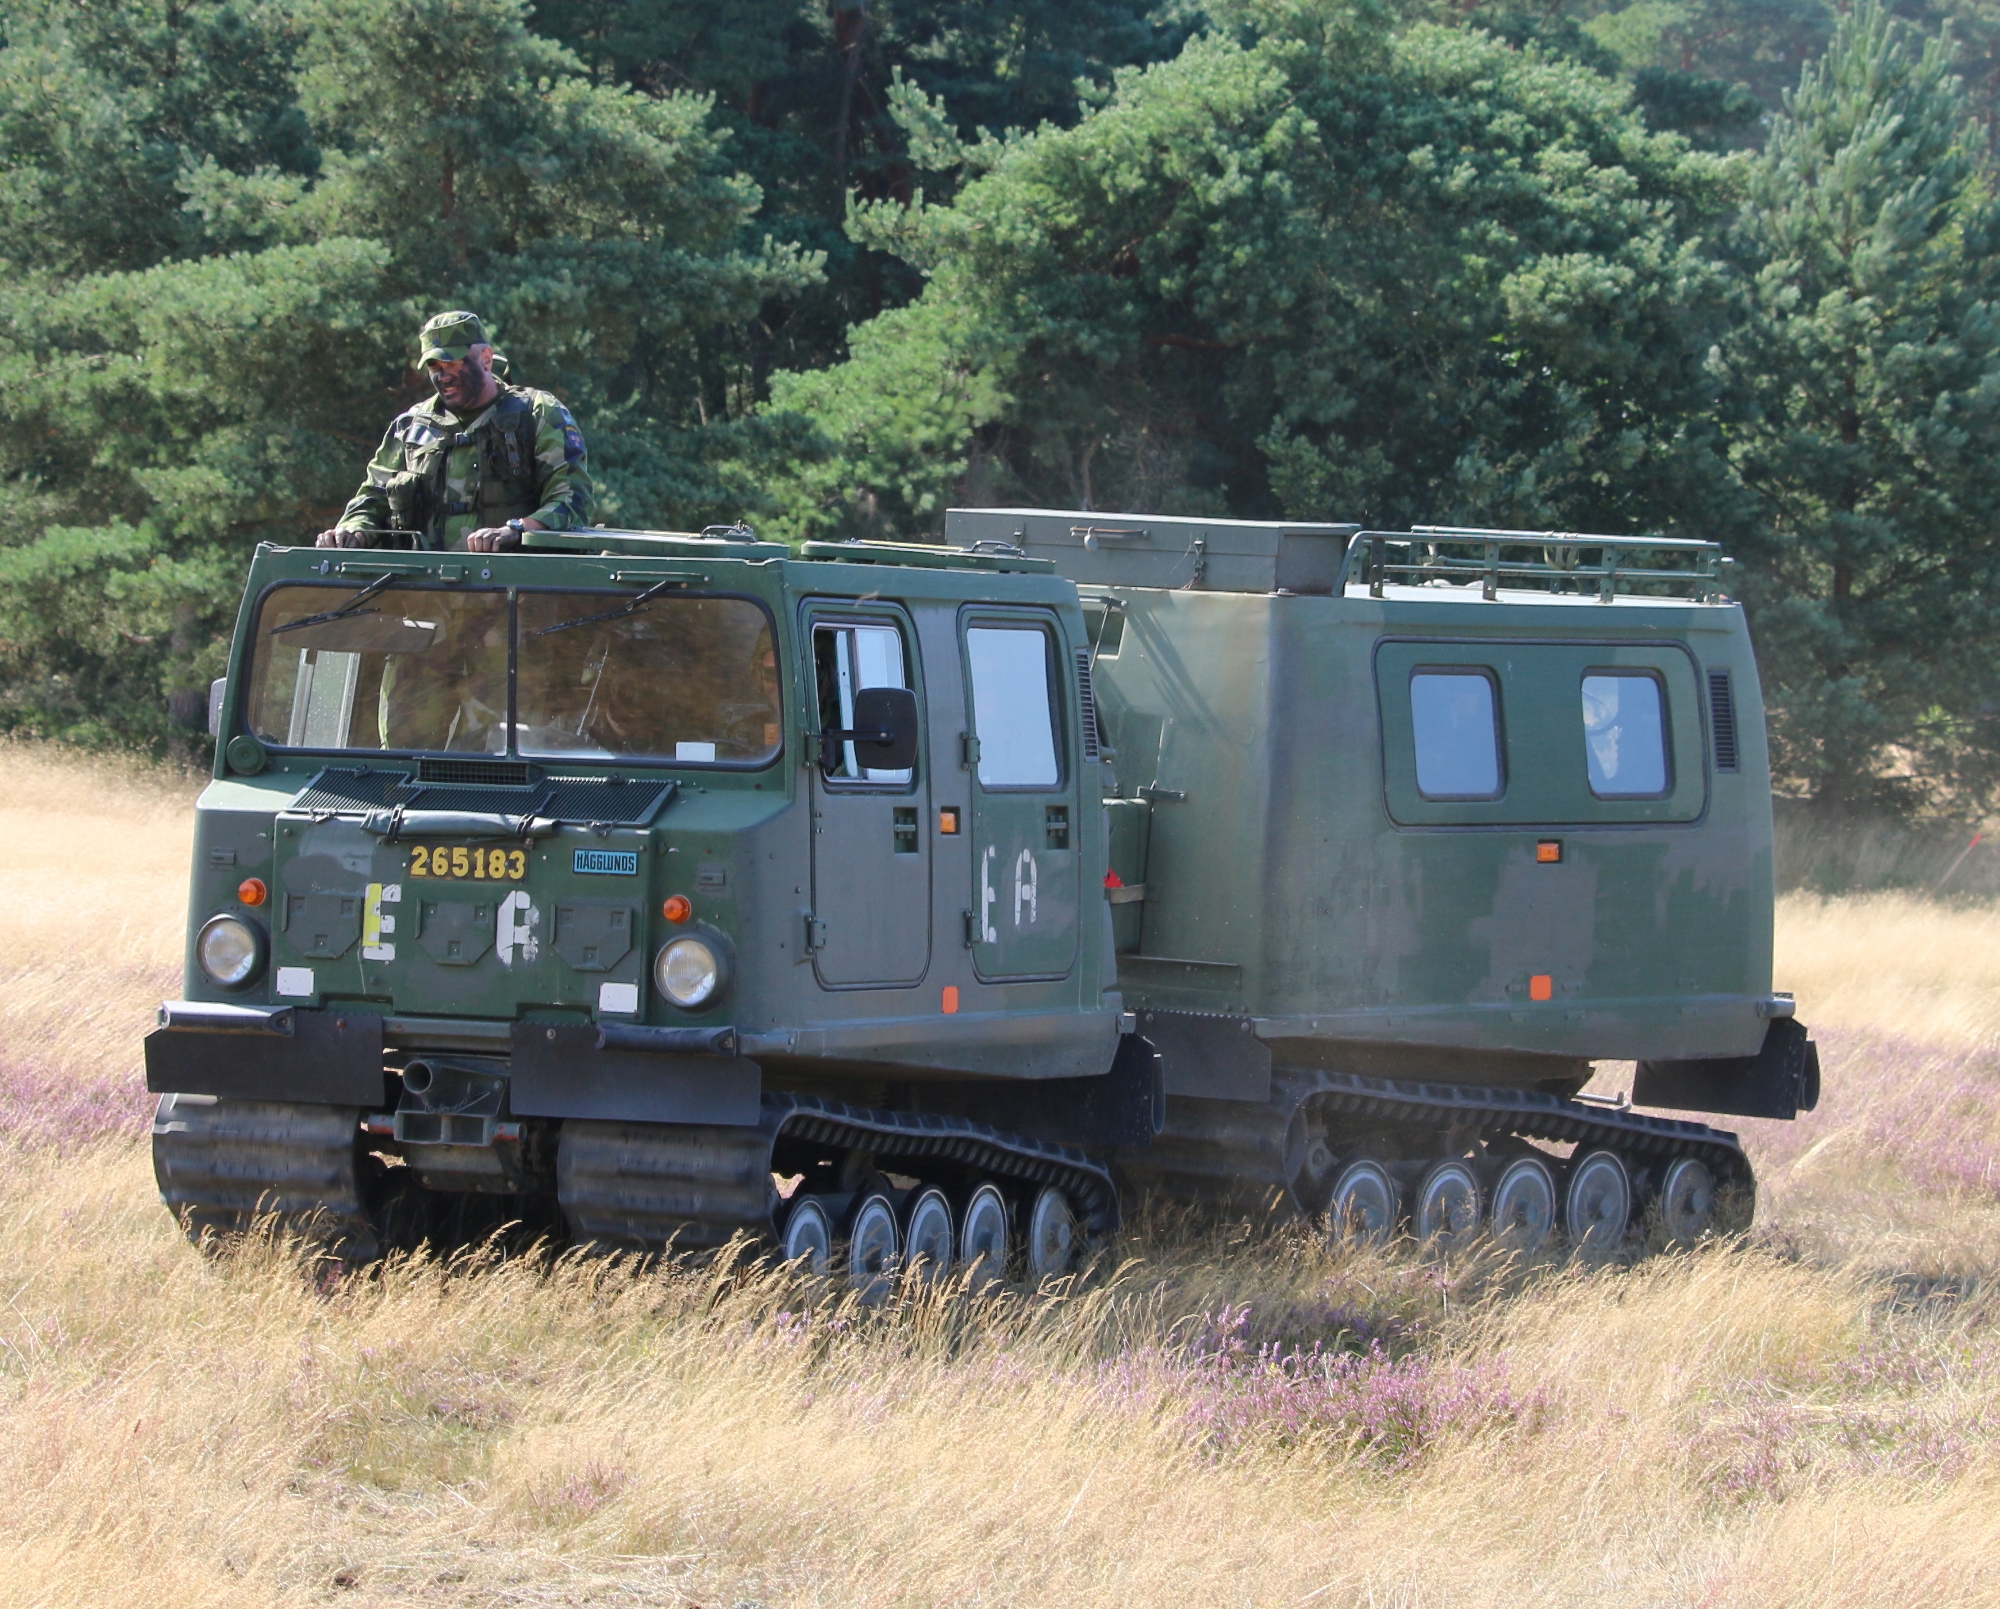 radio Leopard, veicoli blindati fuoristrada Bandvagn 206 e veicoli per lo sminamento WISINT 1: La Germania consegna all'Ucraina un nuovo pacchetto di armi